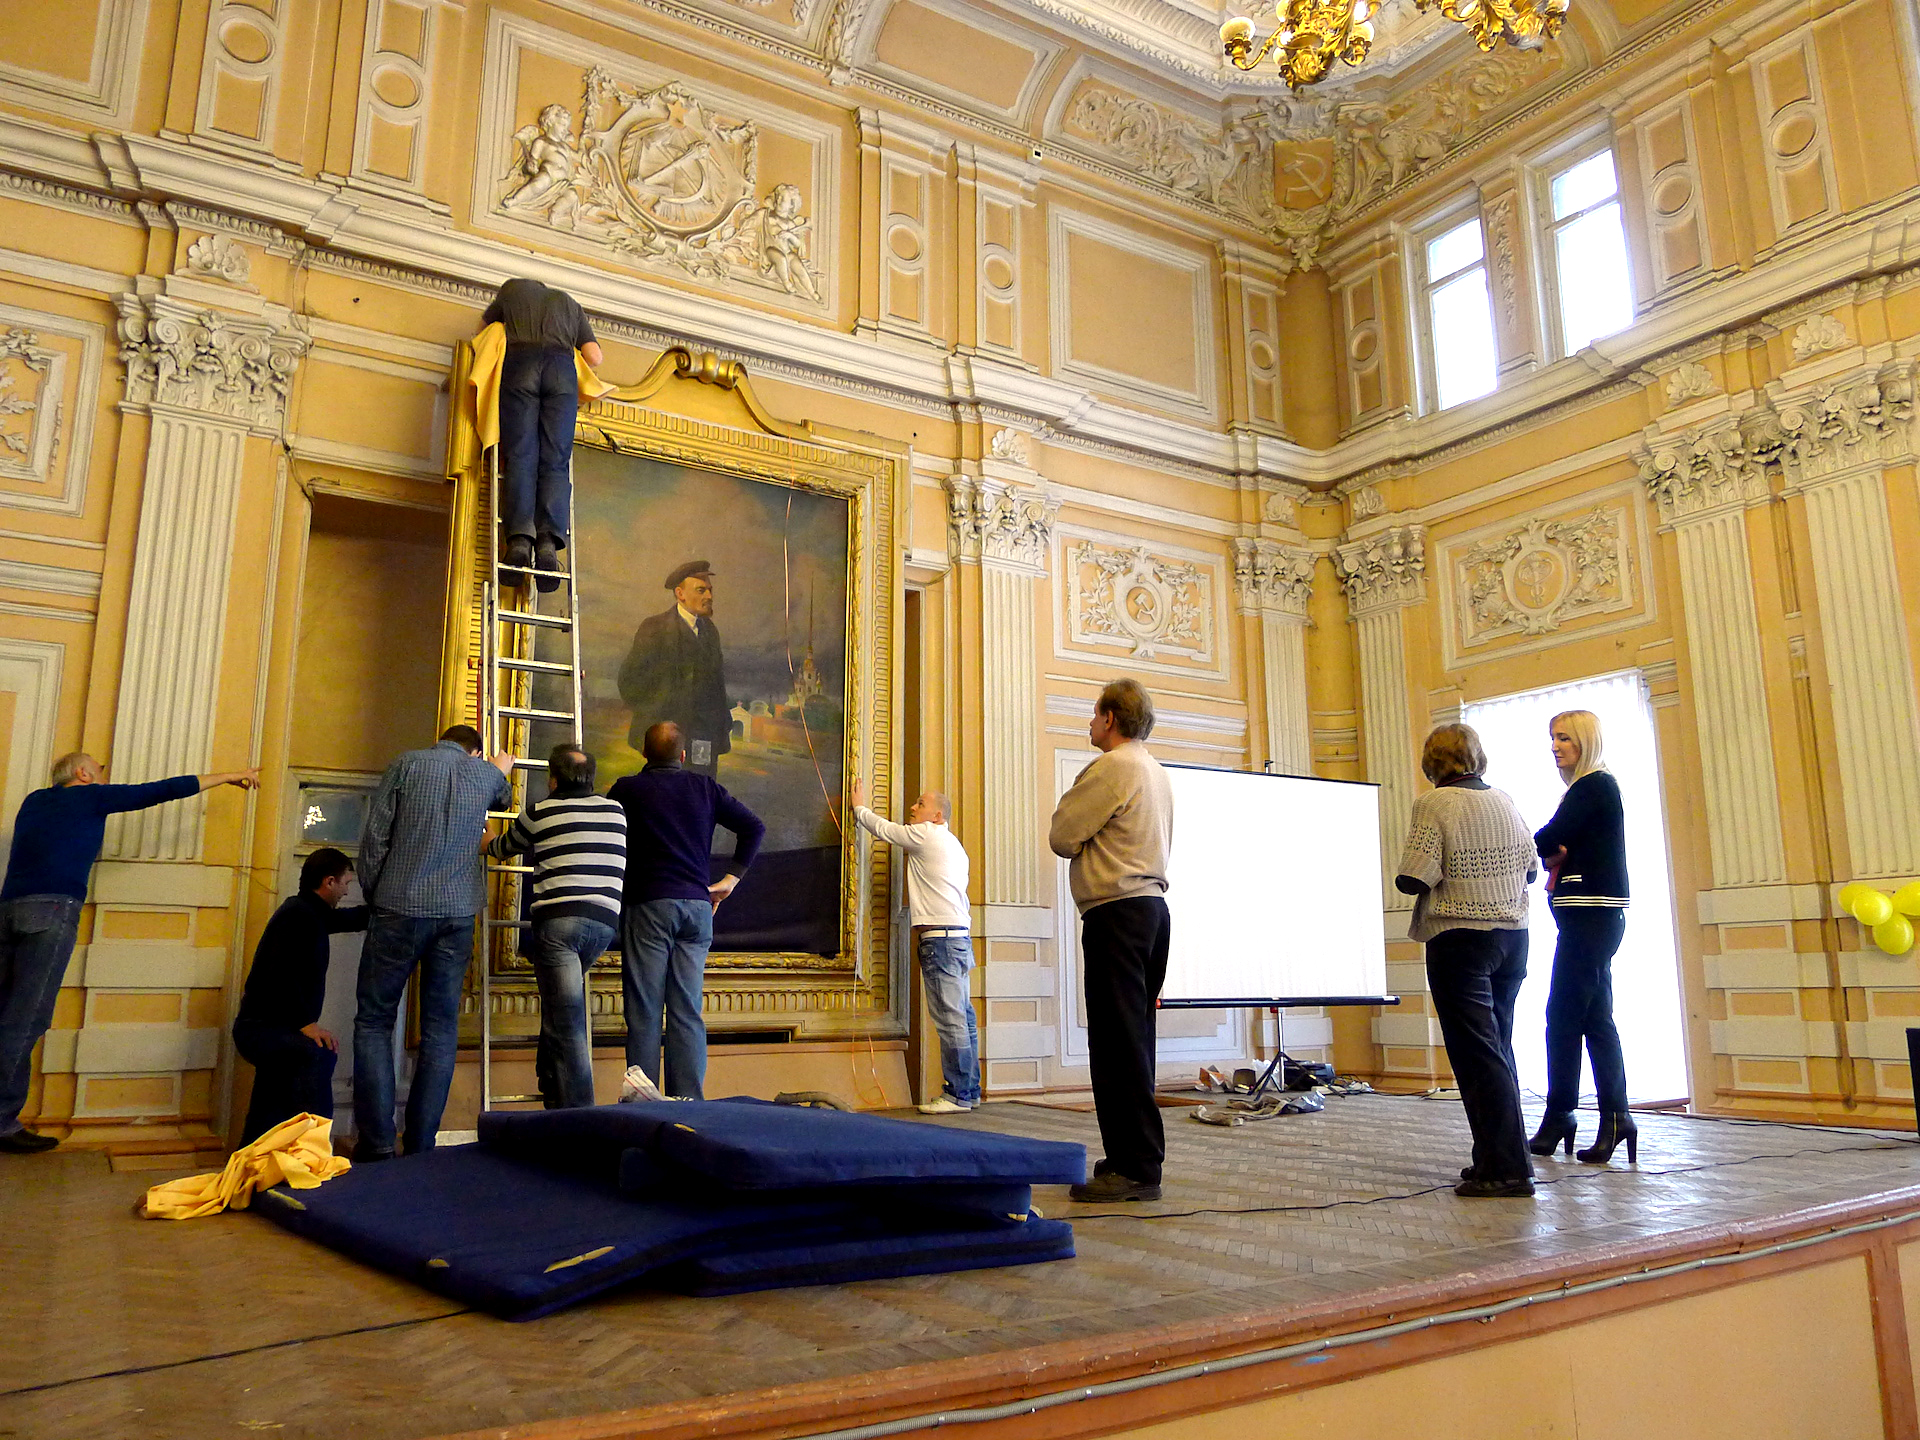 Рестаурисани радови двојице сликара биће представљени у Музеју примењене уметности Санкт Петербурга.